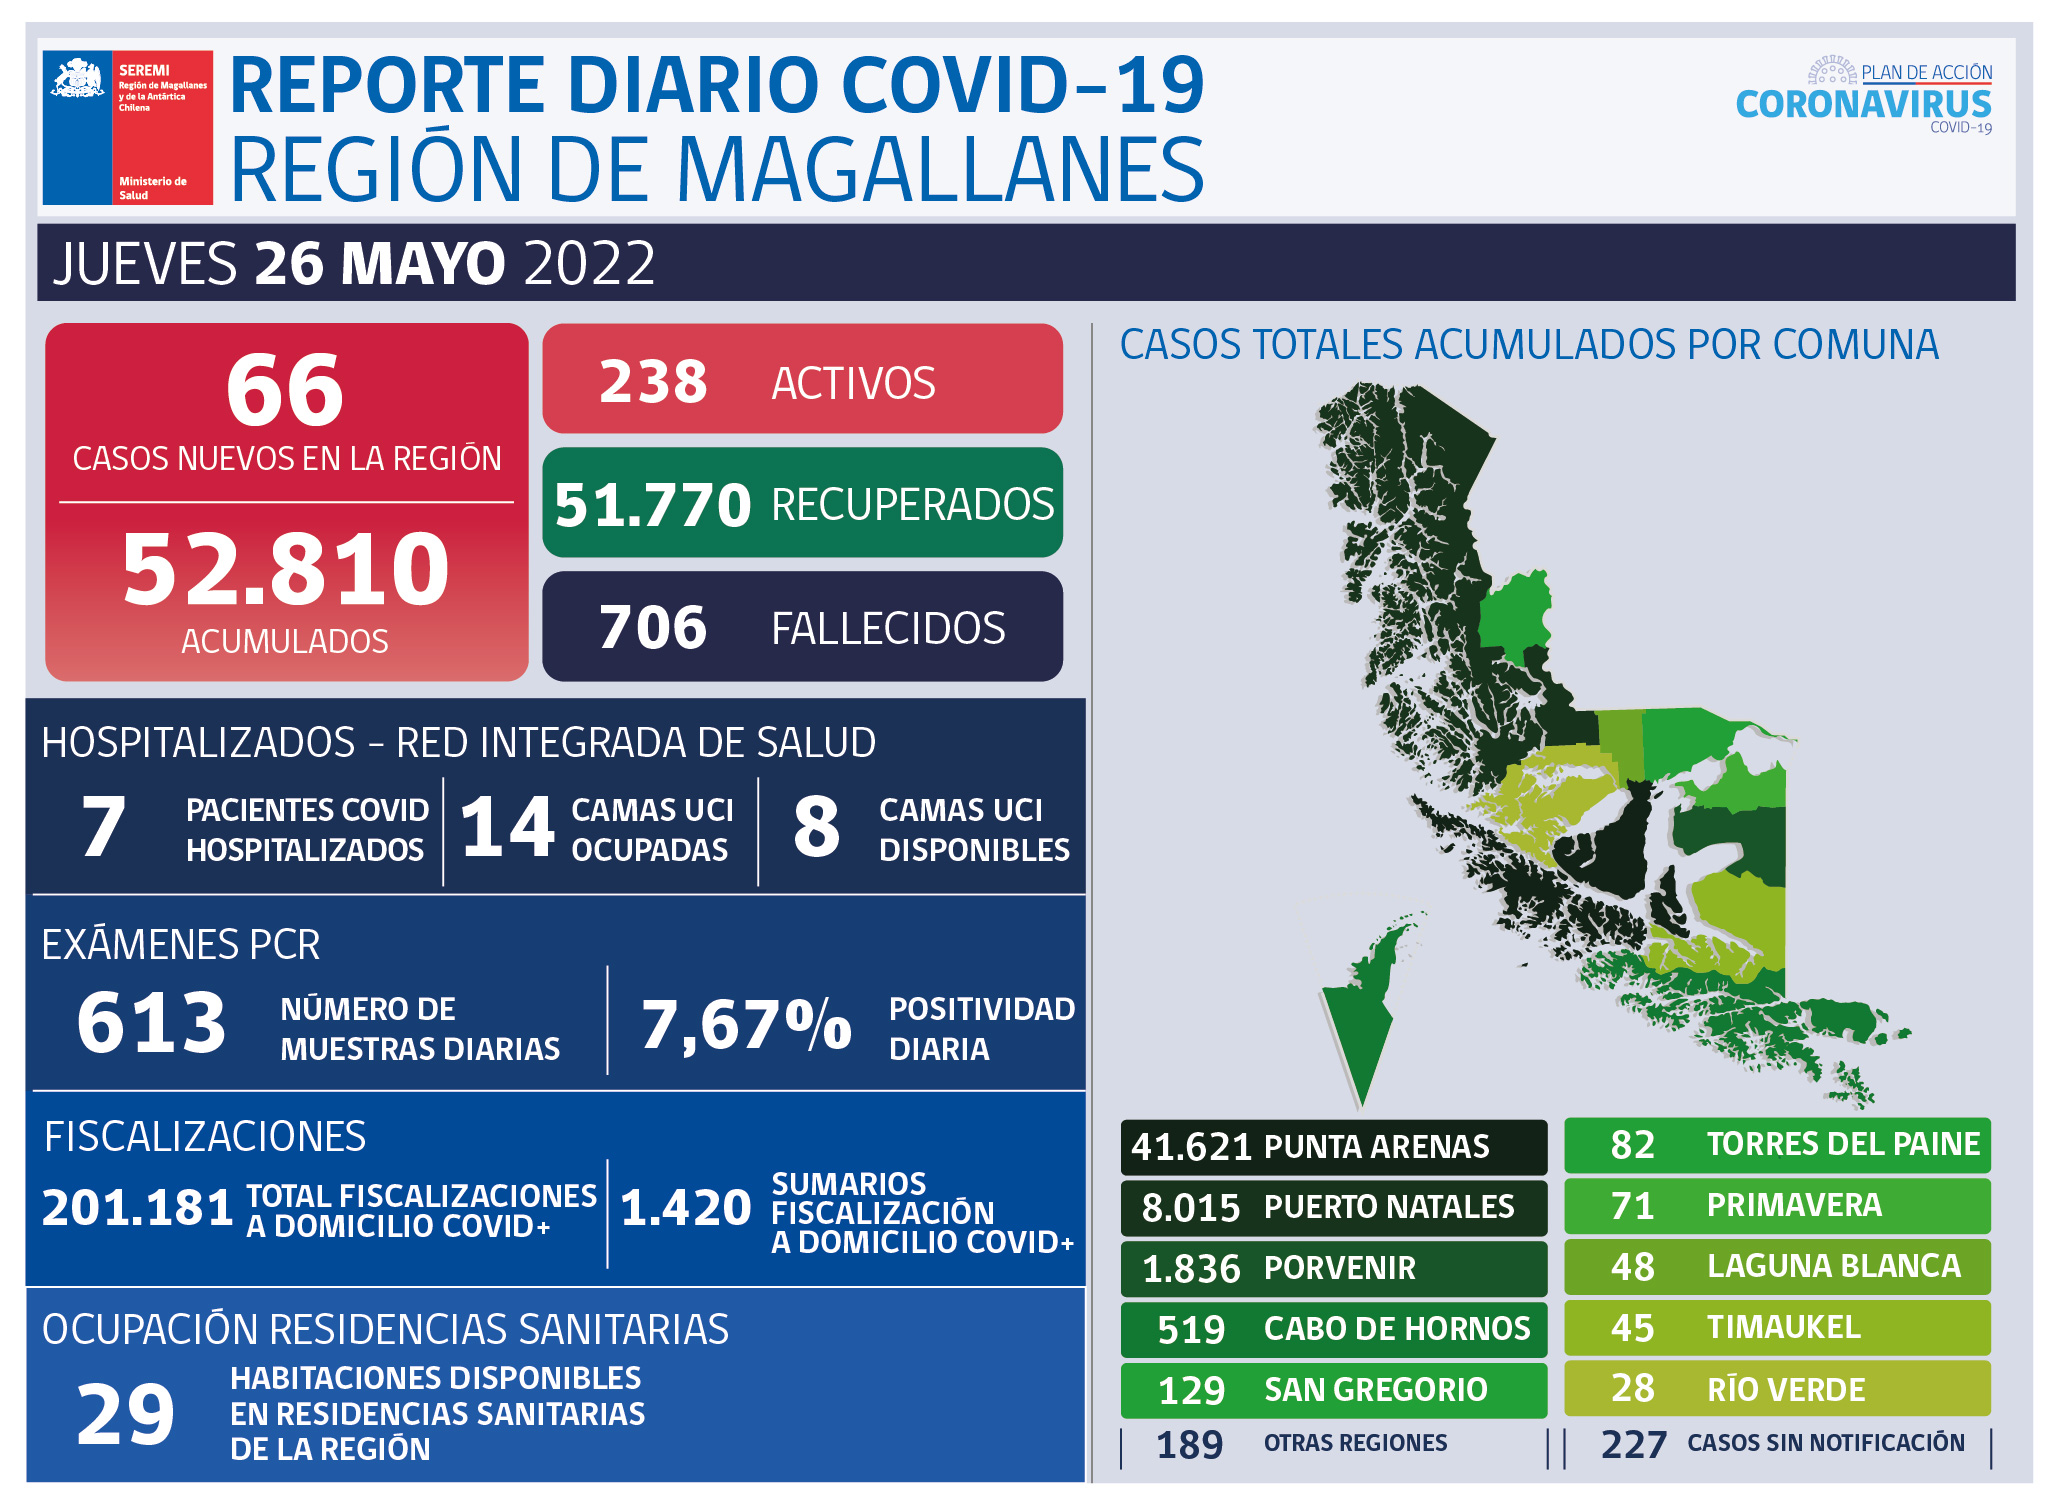 66 nuevos casos de covid19 se registran este jueves 26 de mayo en Magallanes